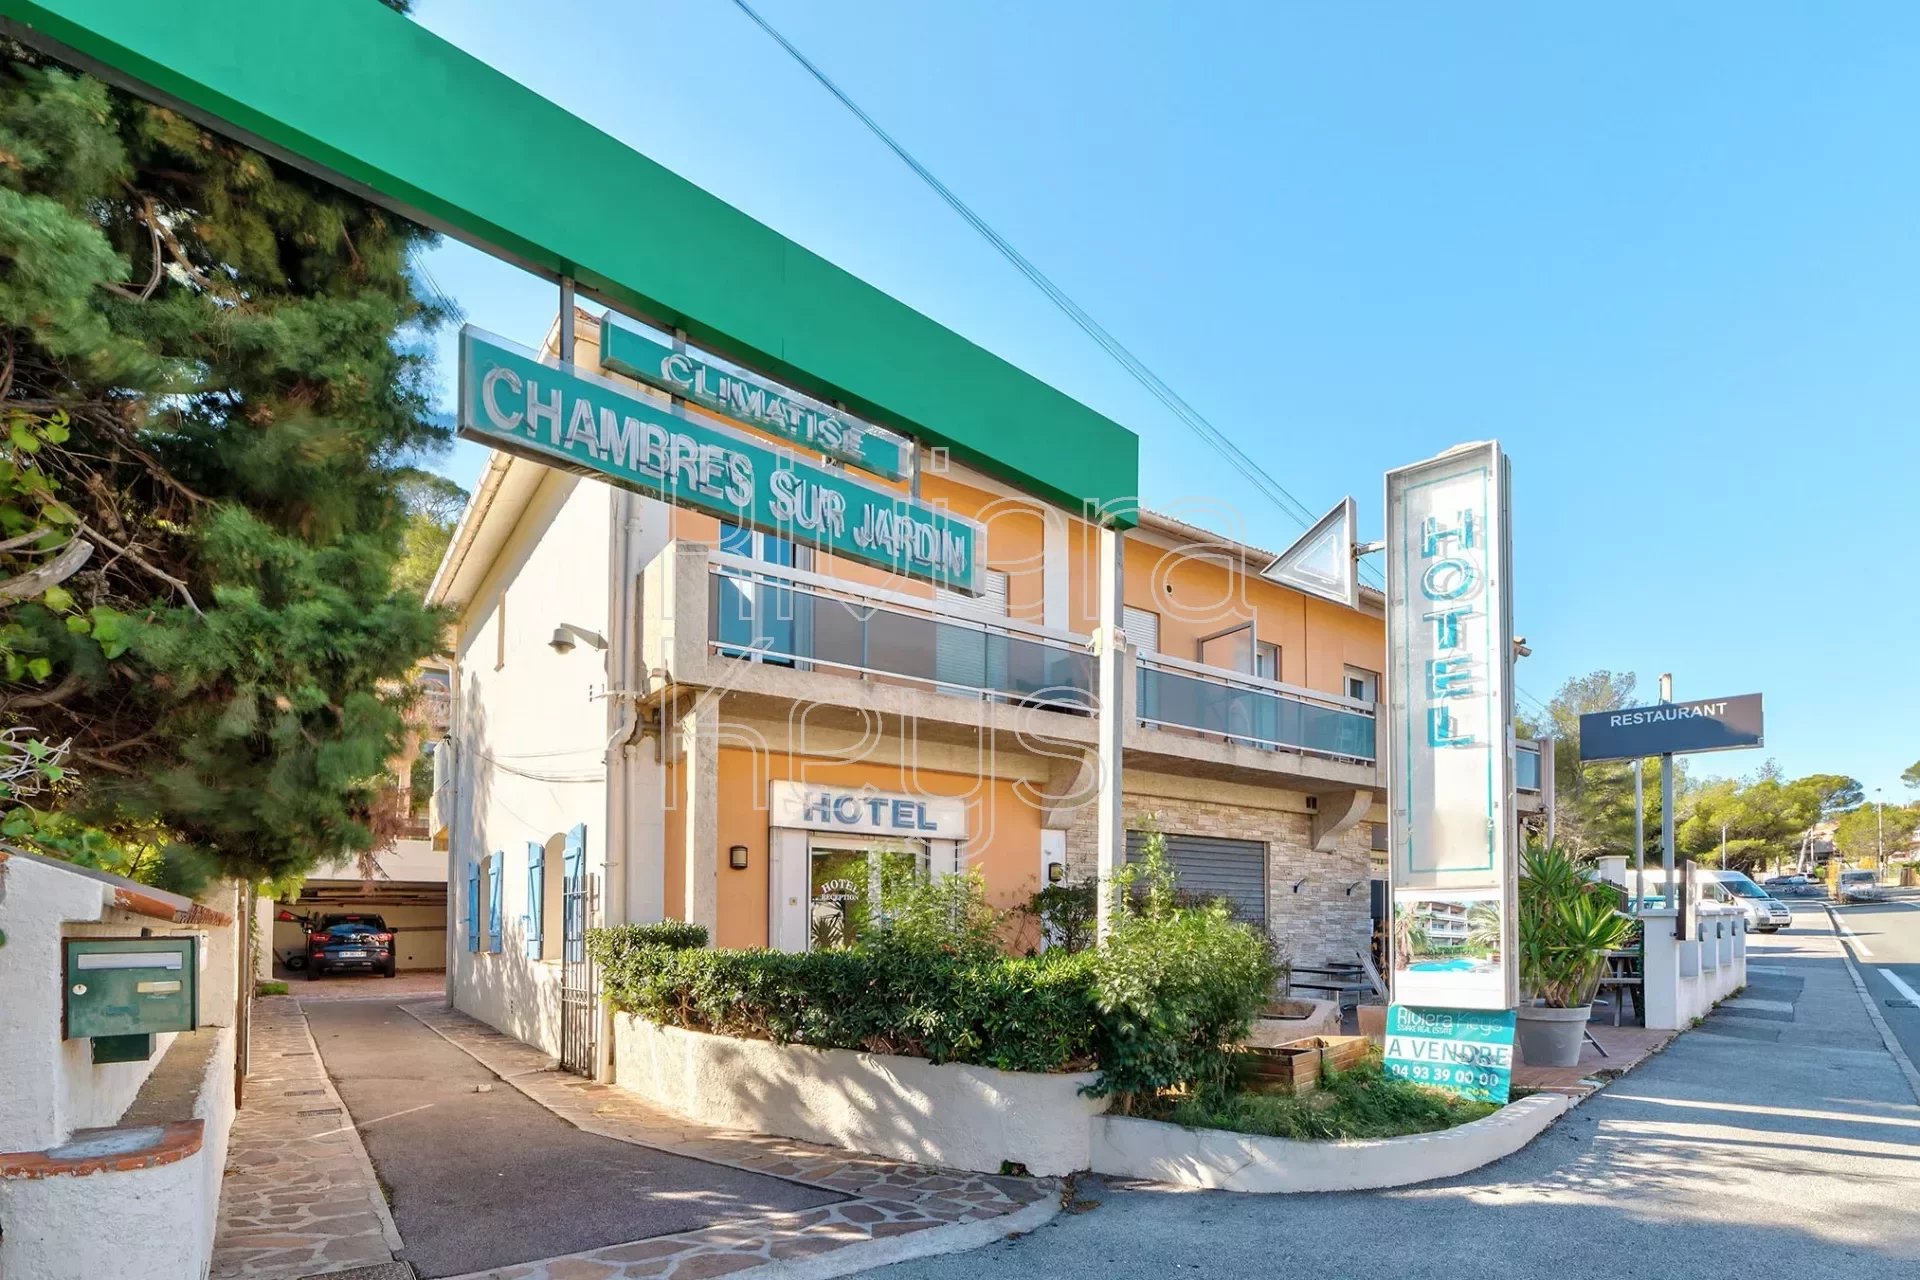 Hotell med havutsikt, 50 m fra stranden, førsteklasses beliggenhet i Agay, Saint-Raphaël